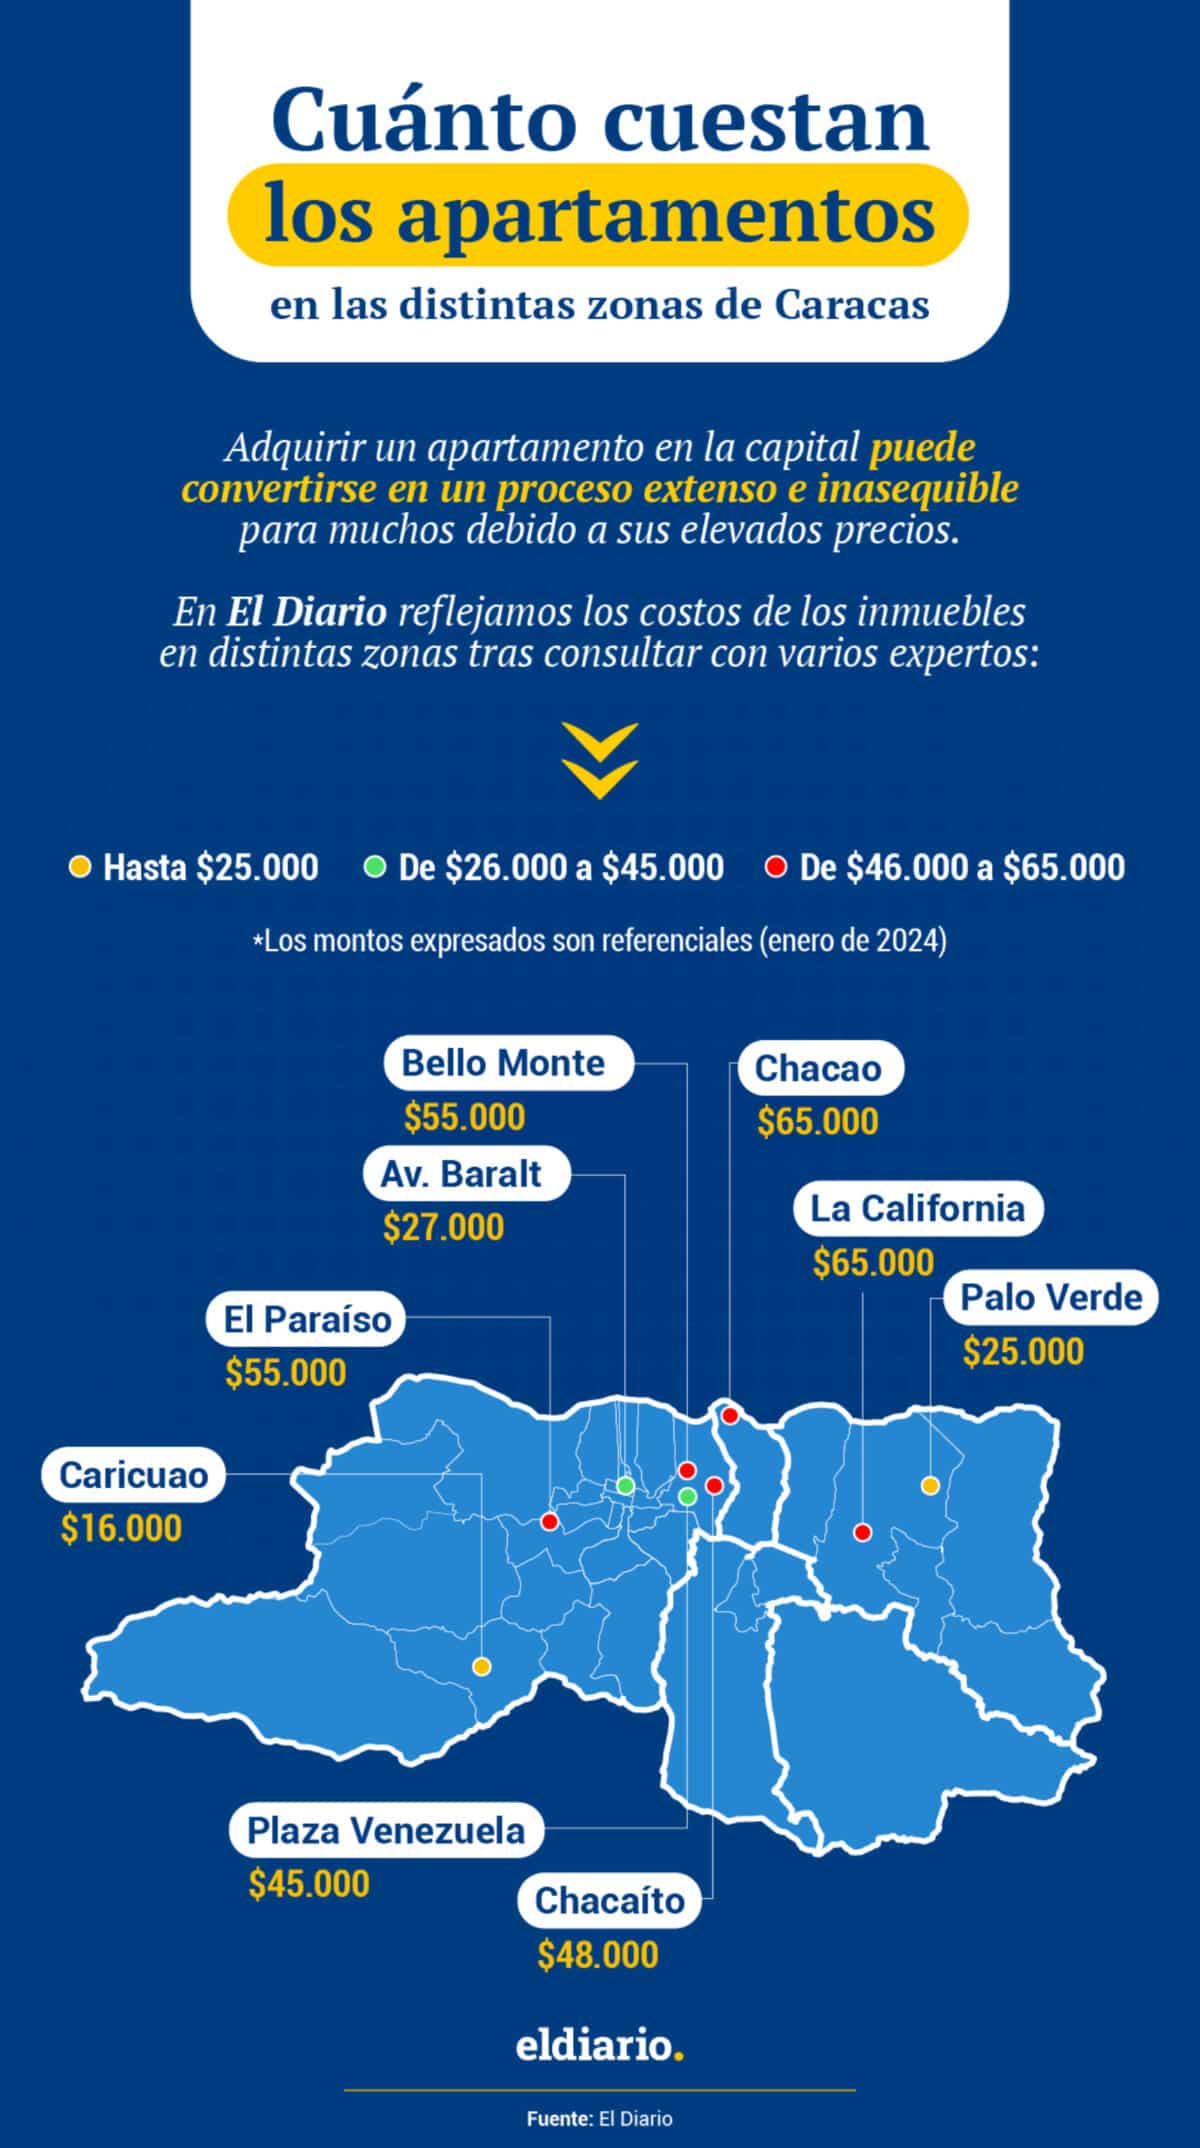 Cuánto cuestan los apartamentos en las distintas zonas de Caracas